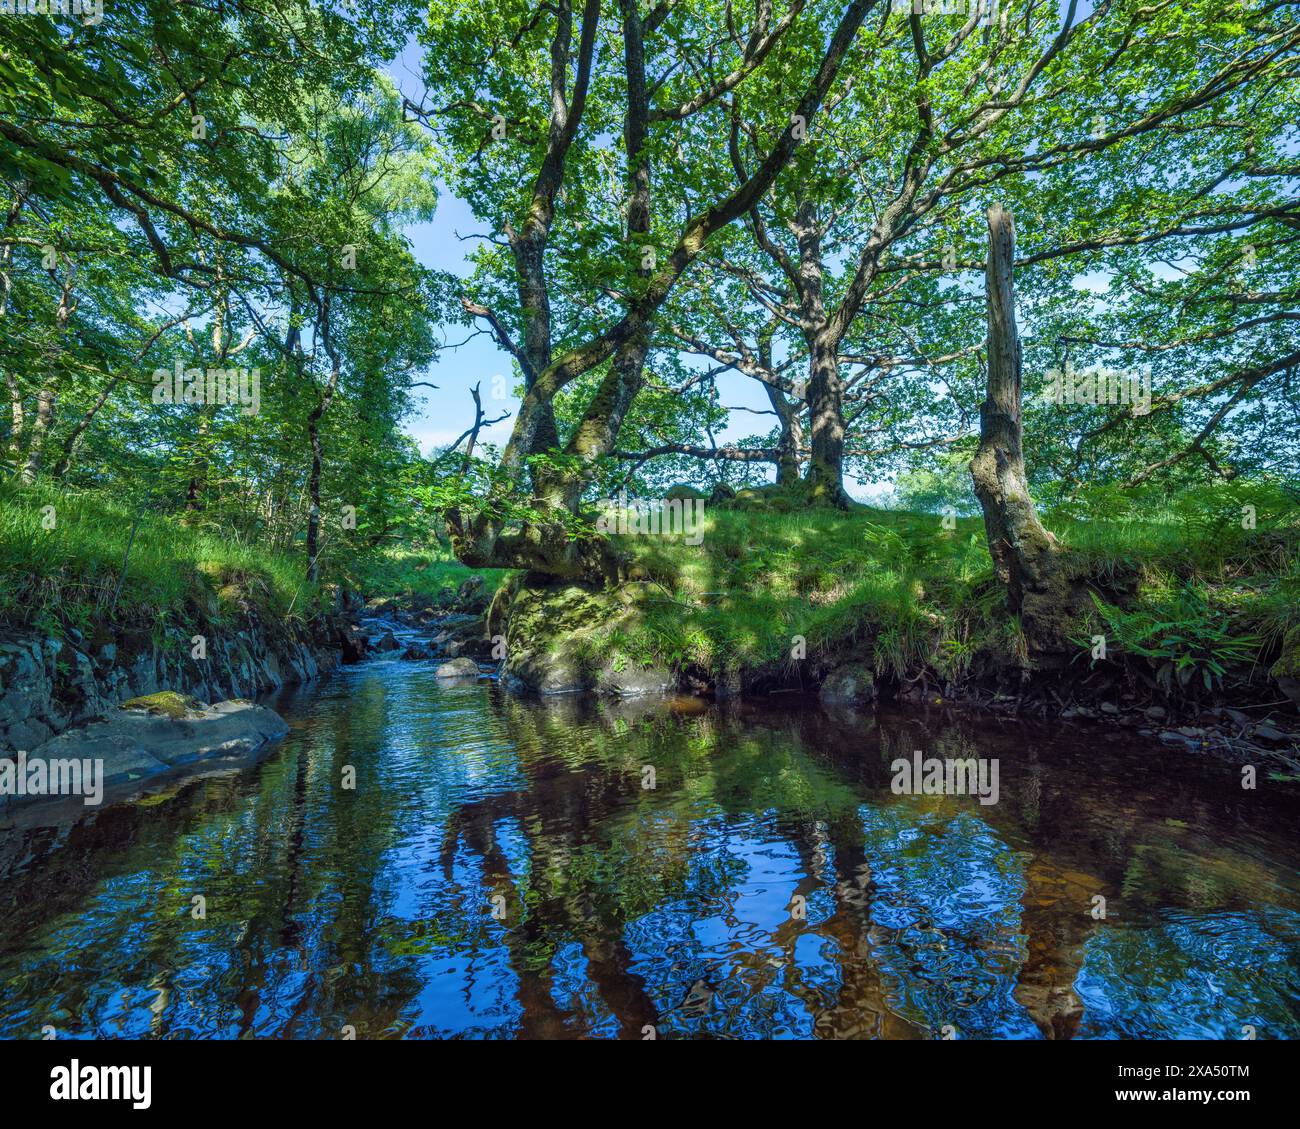 Ruhiger Fluss, der durch einen üppigen Wald fließt, mit Sonnenlicht, das durch das Baldachin gefiltert wird. Stockfoto